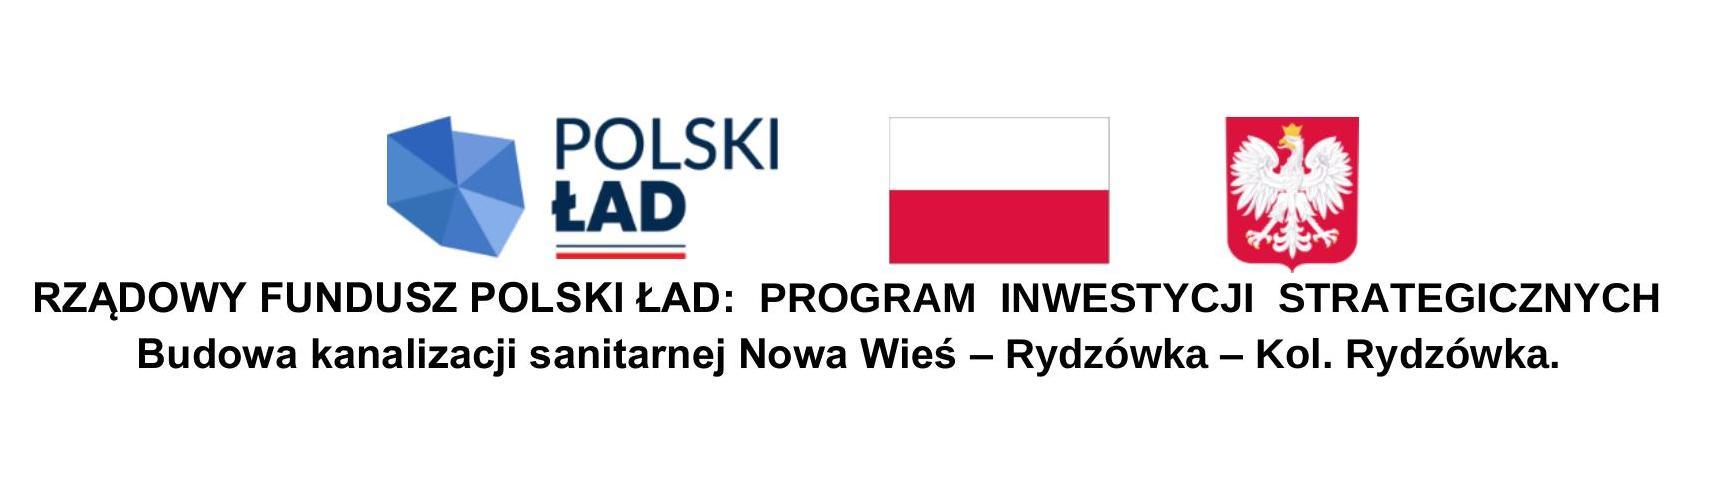 Belka-Polski-Lad-Kanalizacja-Nowa-Wies-Rydzowka-Kol_-Rydzowka